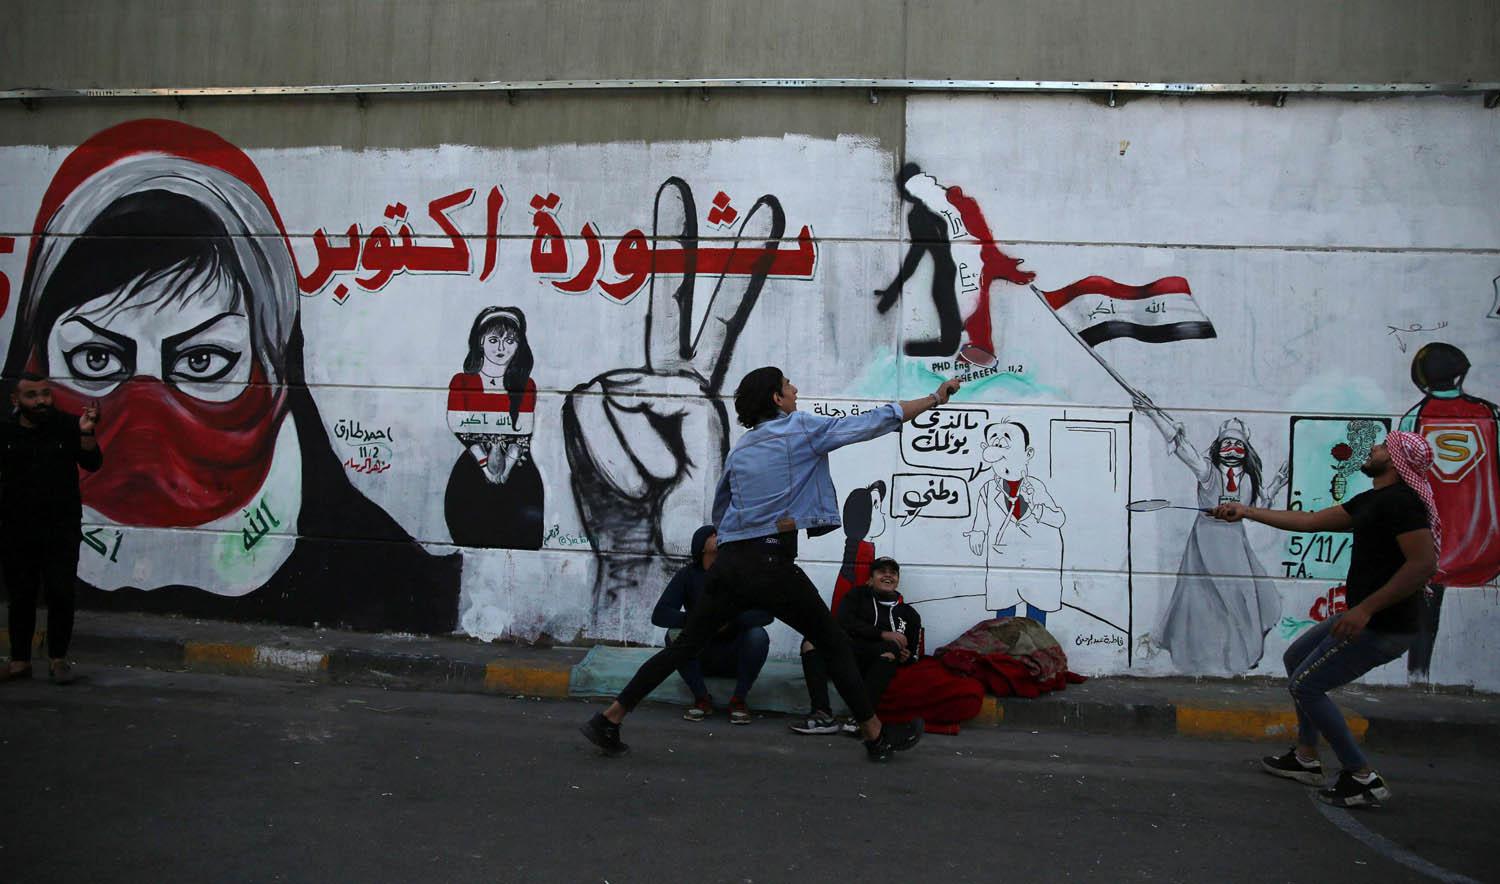 غرافيتي يشيد بالثورة العراقية في بغداد